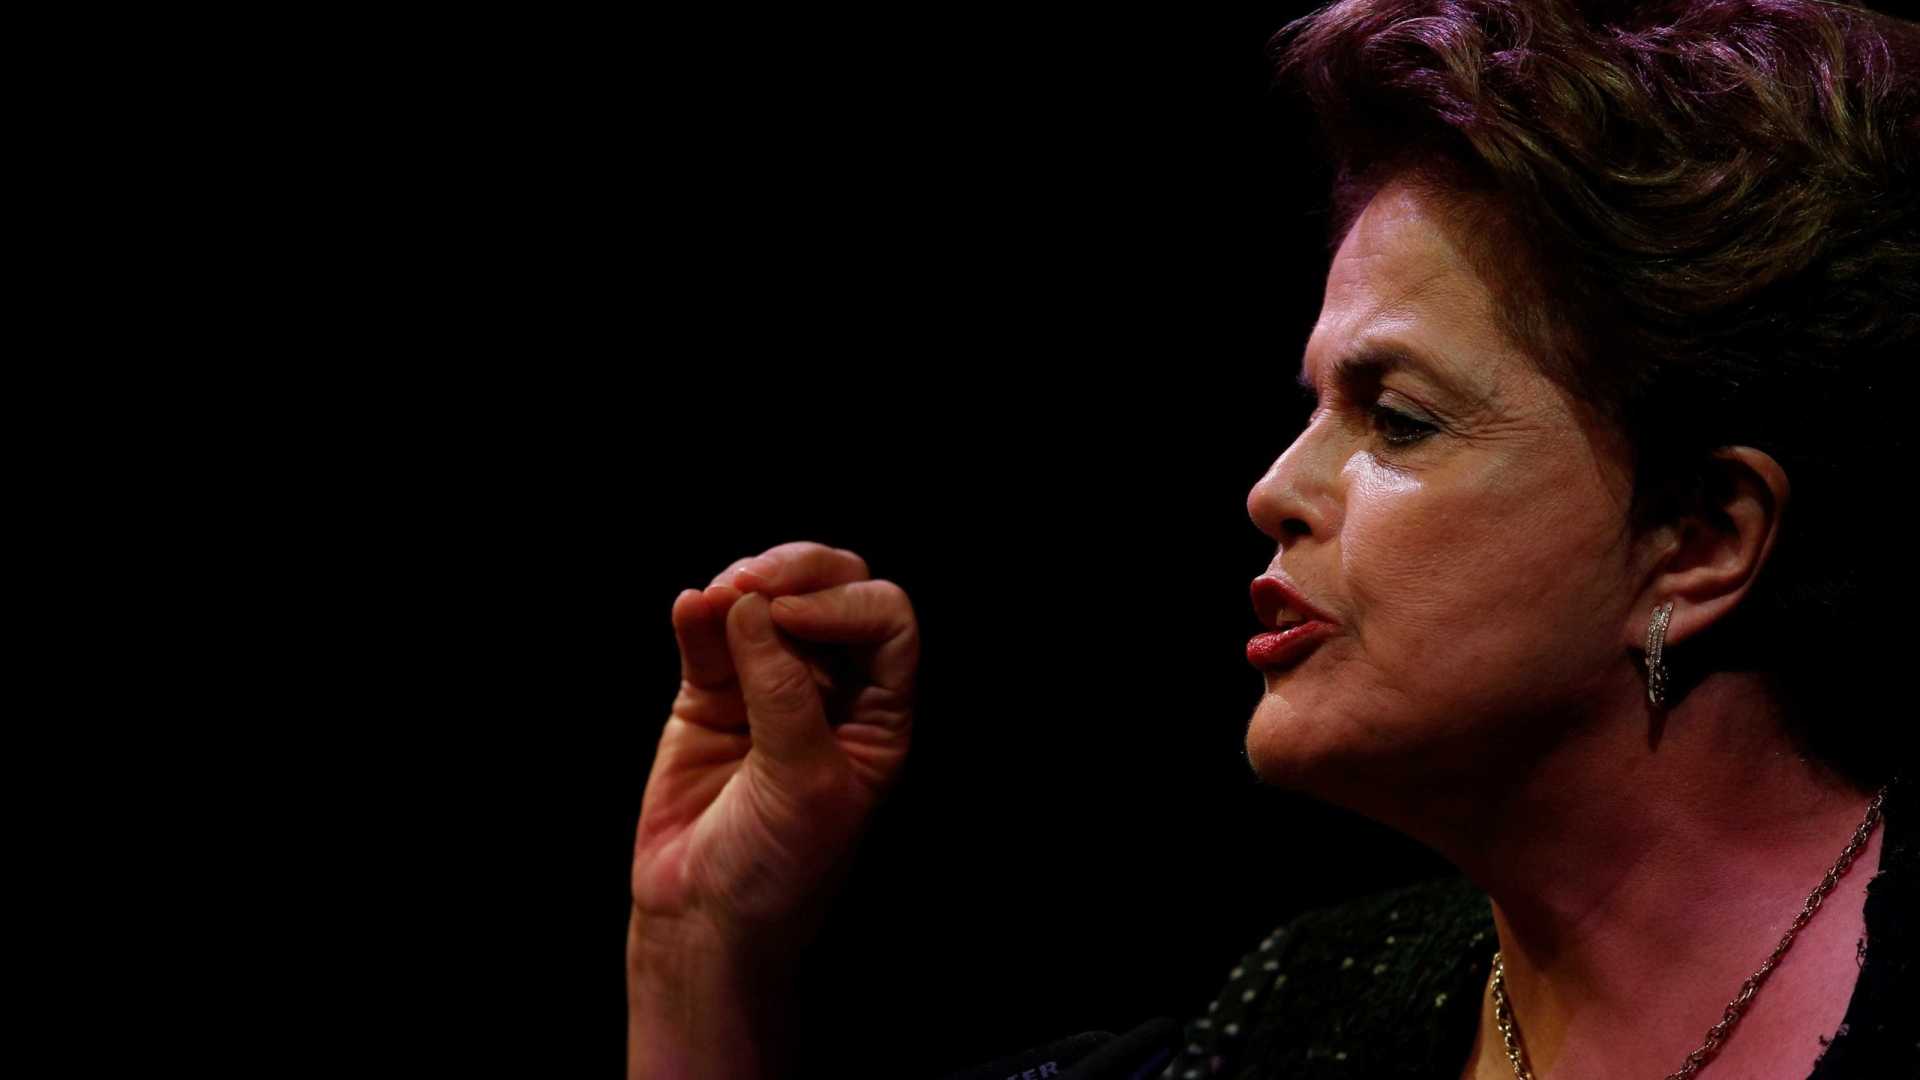 Infelizmente eu assinei a lei que criou a delação, diz Dilma